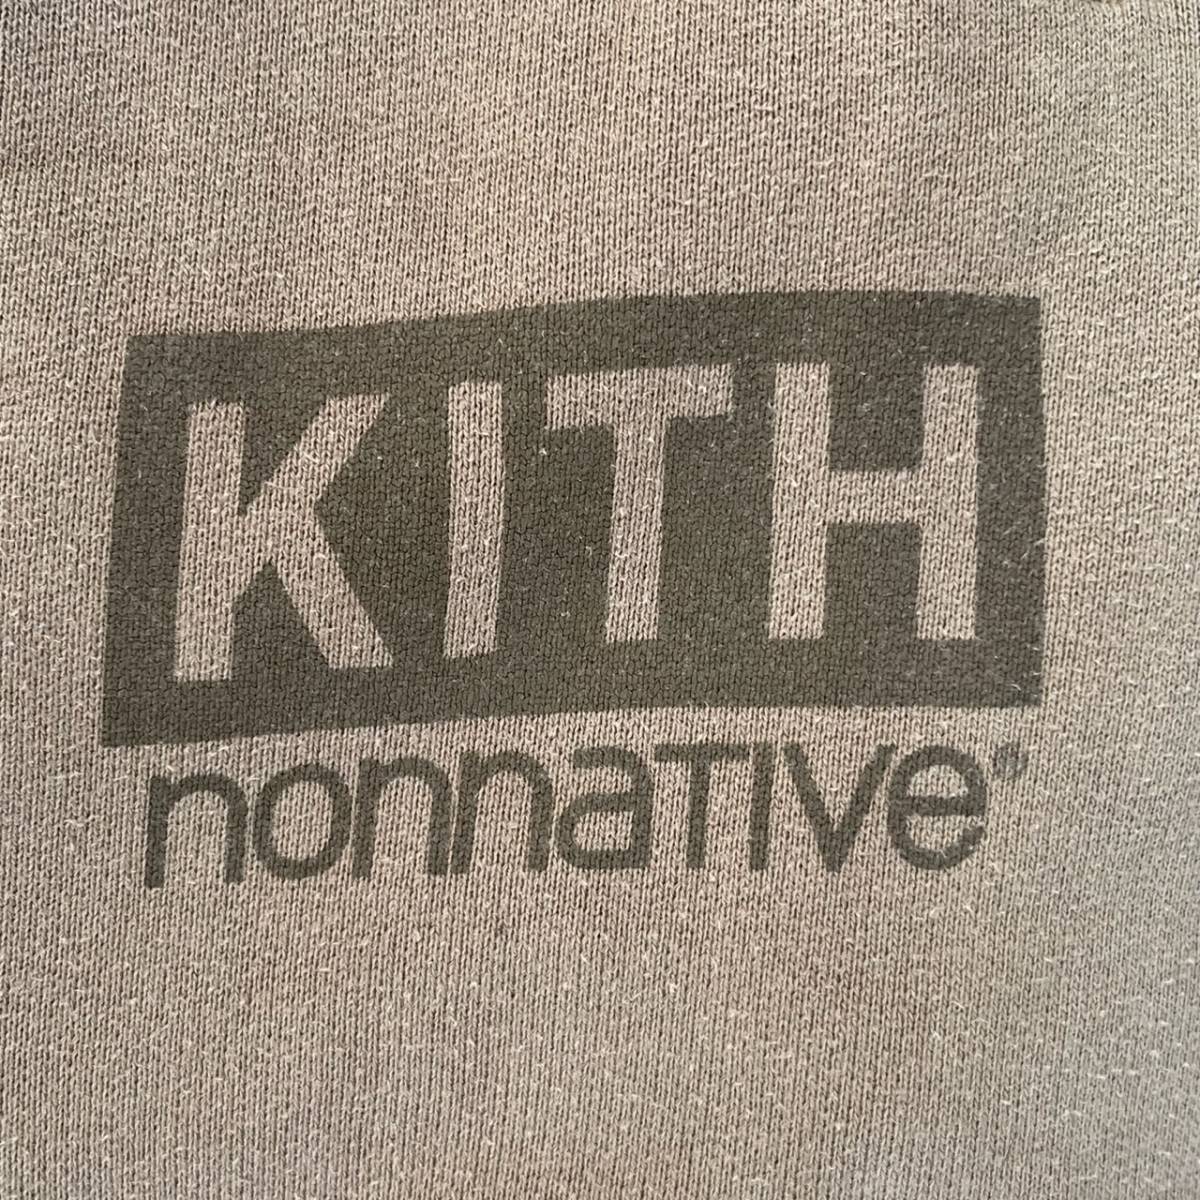 KITH キス × nonnative ノンネイティブ サイズ0 スウェットパンツ ロゴ